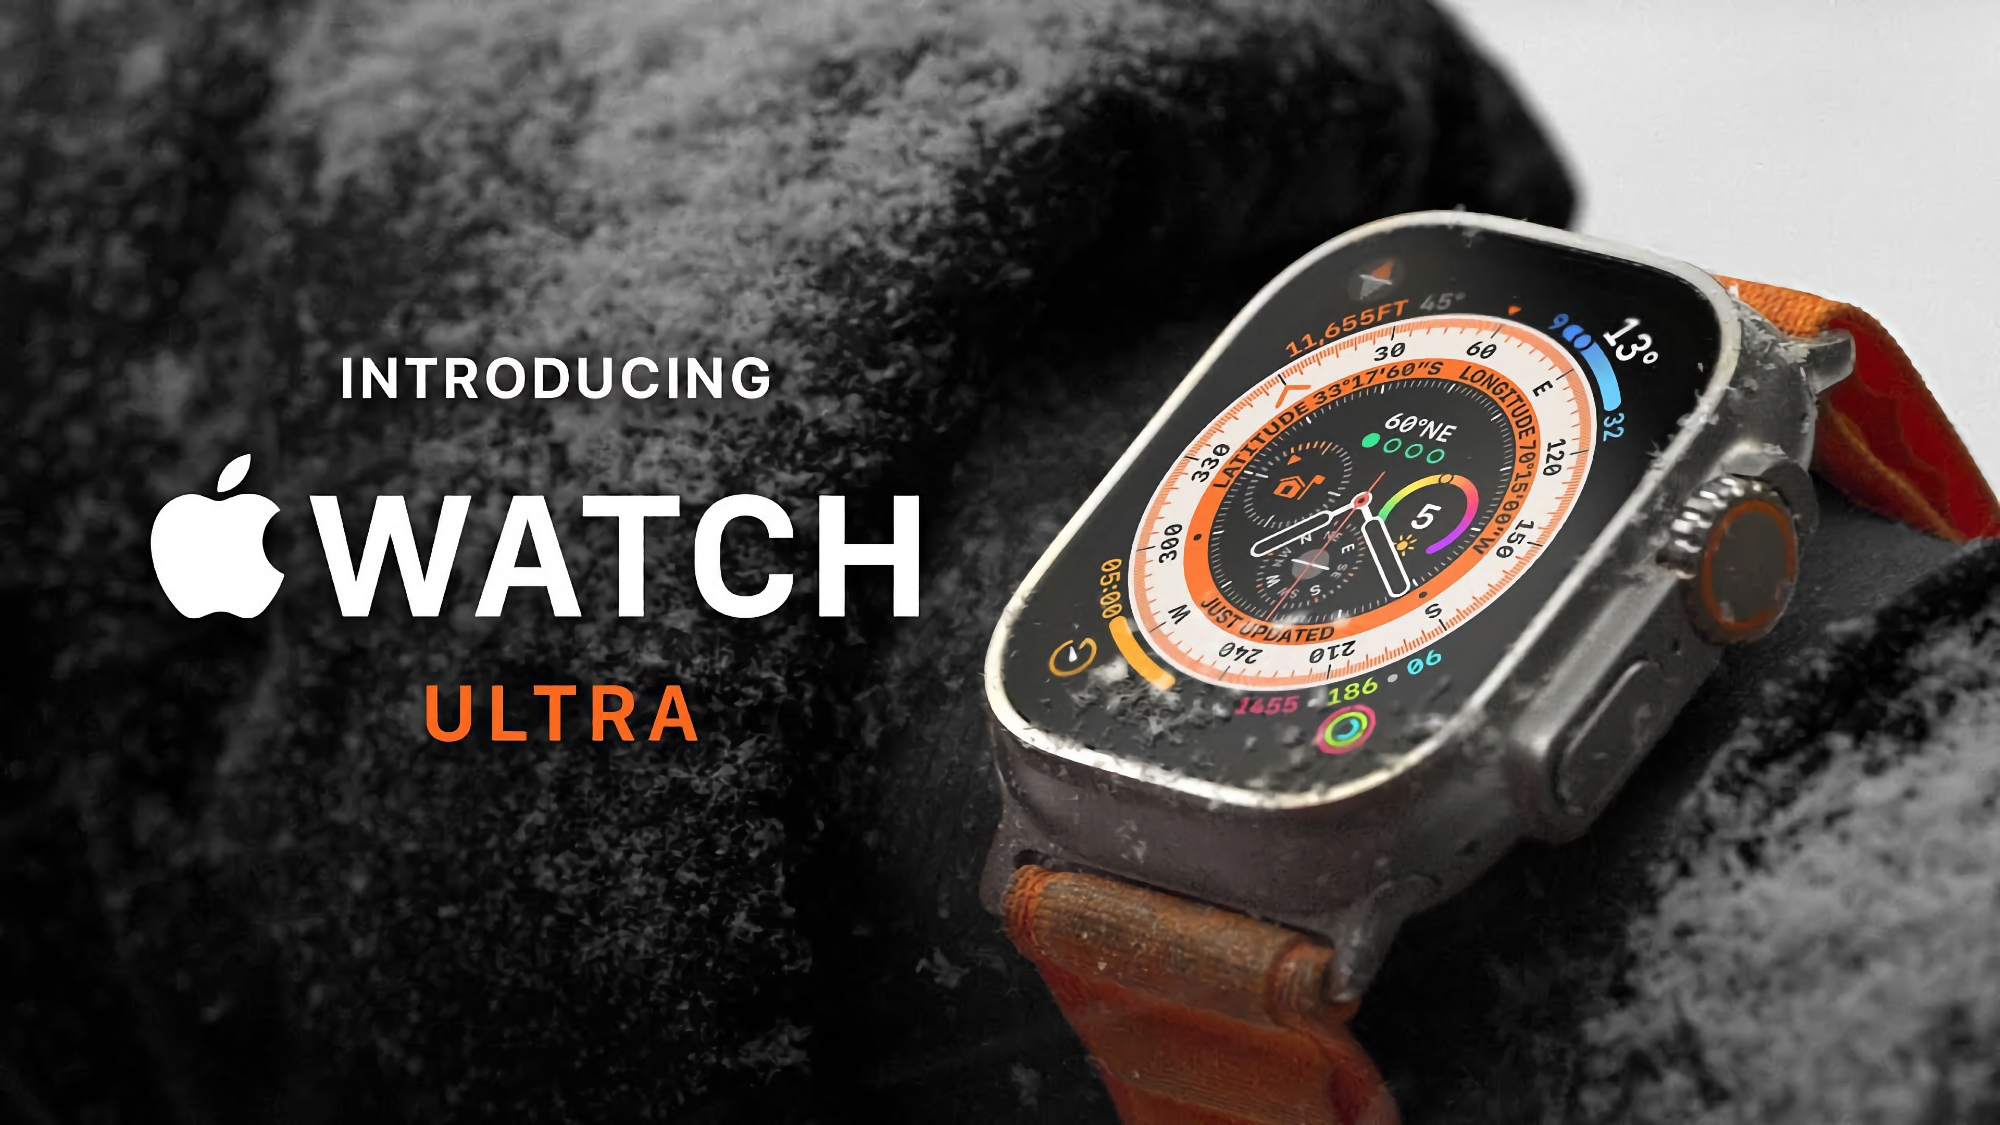 Apple Watch Ultra mit Titanium-Gehäuse und Saphirglas ist auf Amazon für 12% Rabatt erhältlich